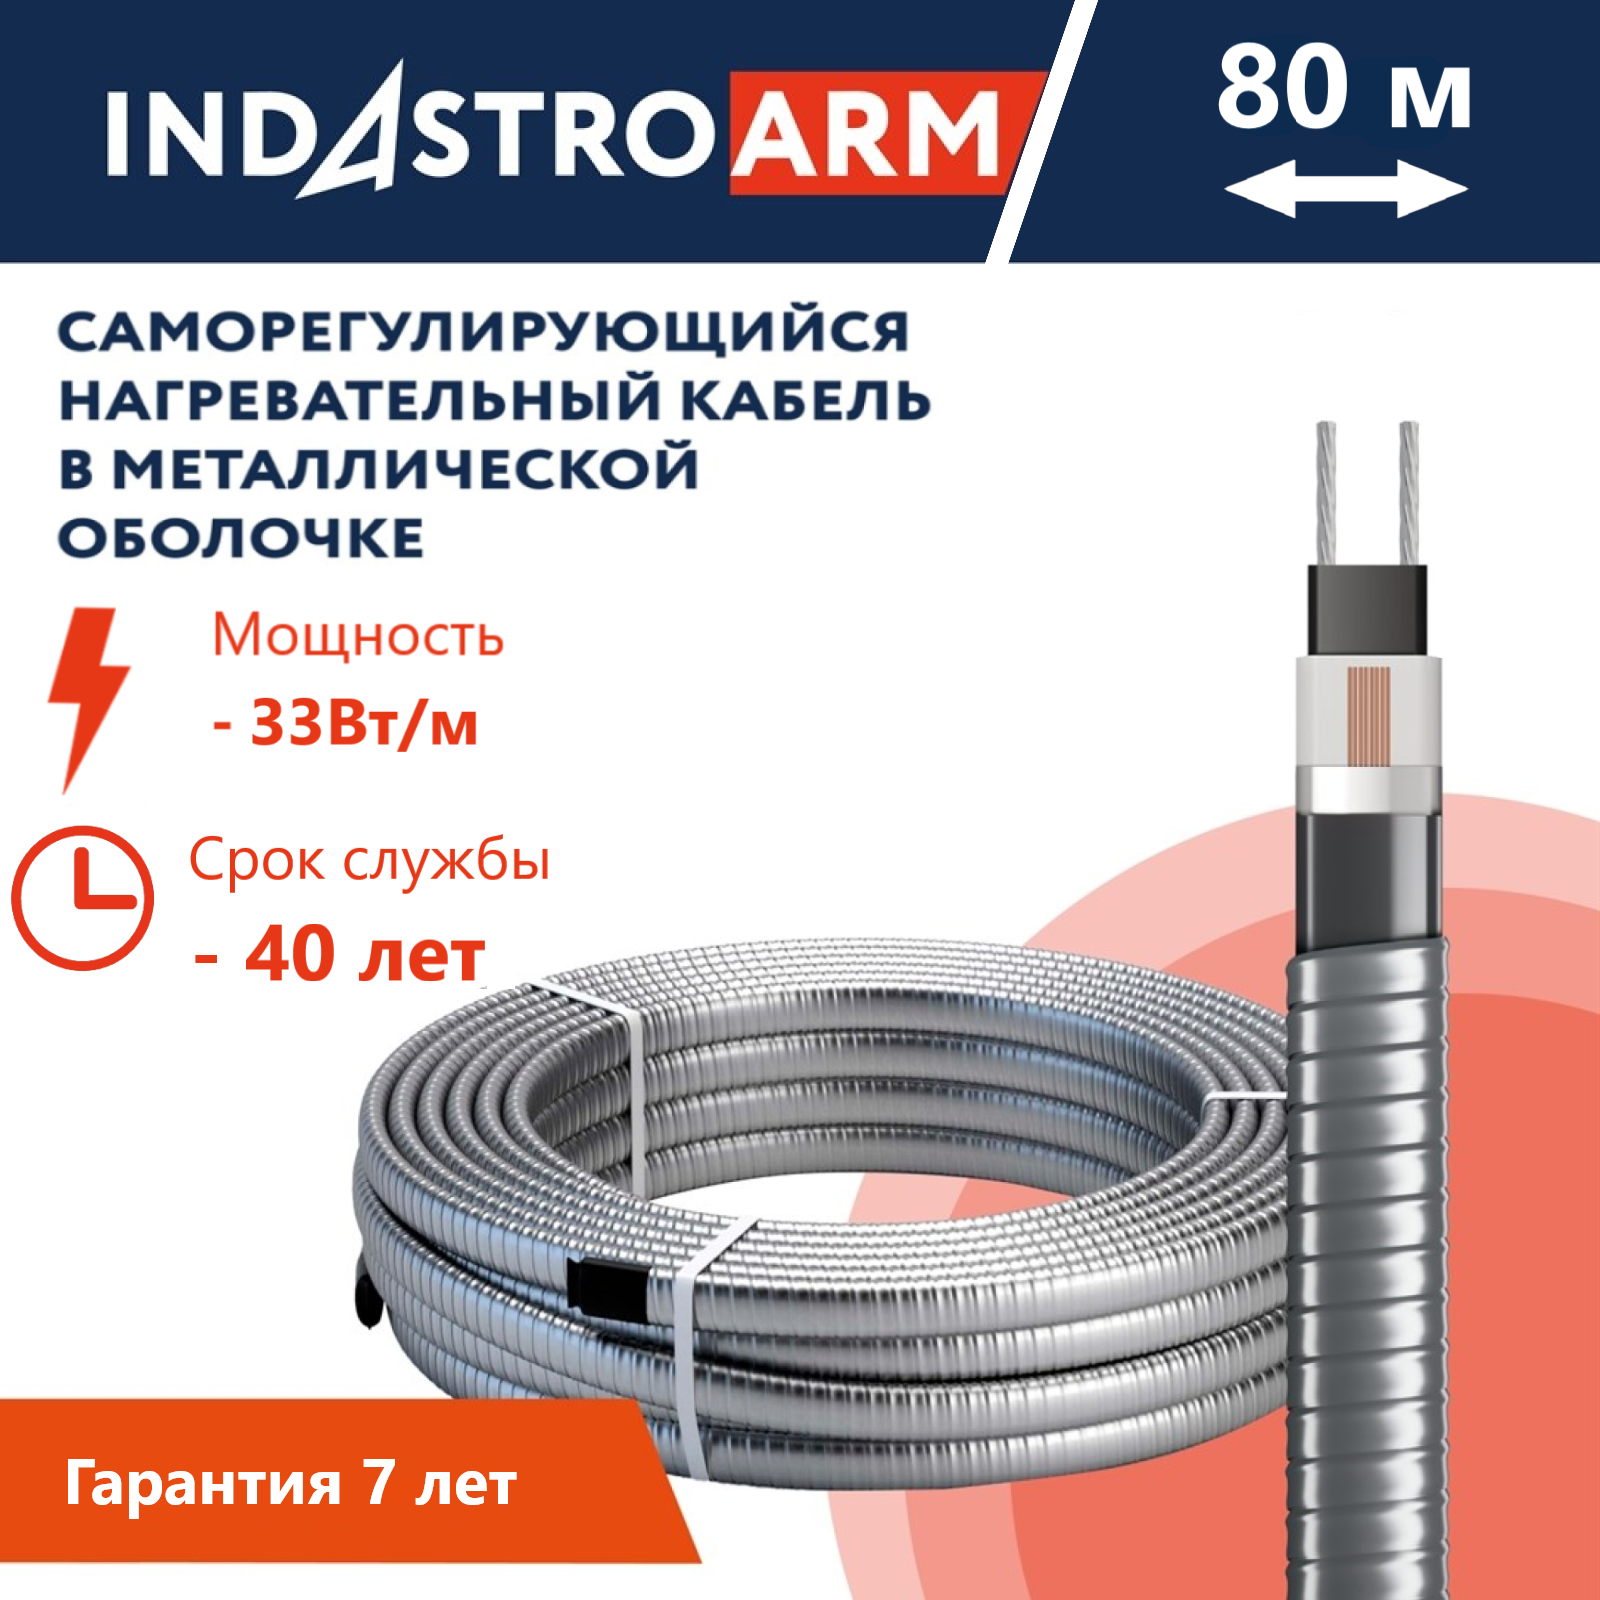 Греющий кабель в броне для обогрева кровли, водостоков IndAstro ARM, 33 Вт/м, 80 метров.